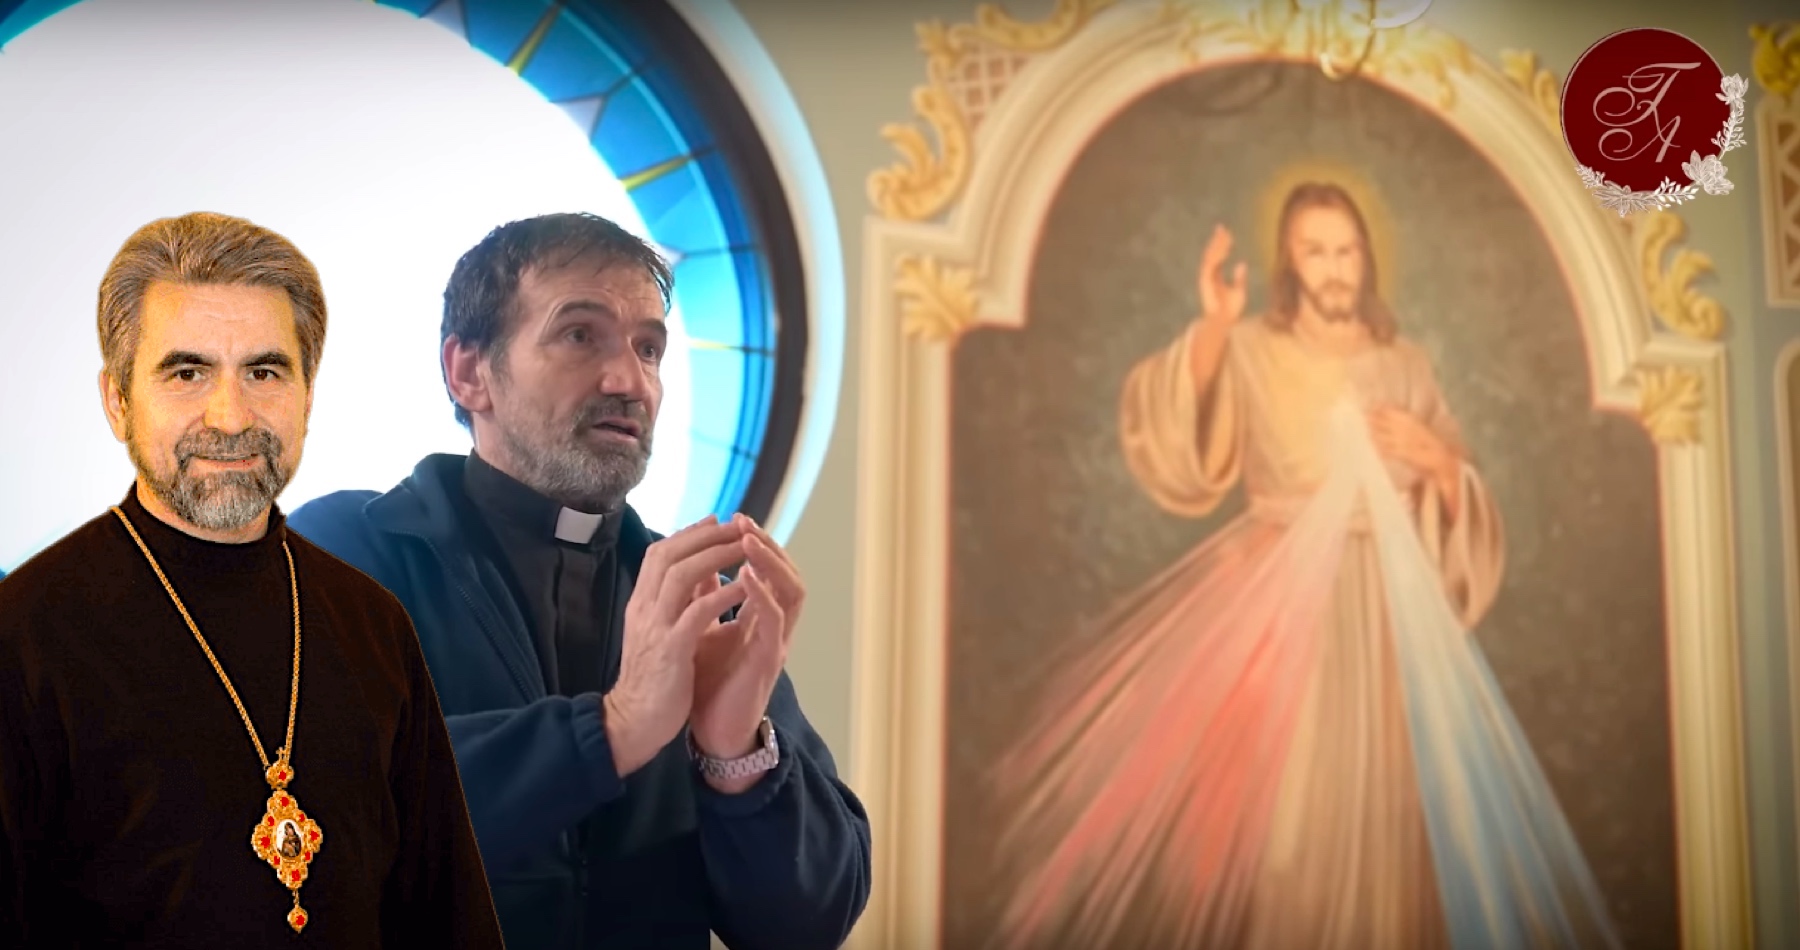 VIDEO: Gréckokatolícky biskup Milan Chautur o prezidentských voľbách, médiách aj o stádovitosti ľudí & odkaz kňaza Marián Kuffa, koho nevoliť